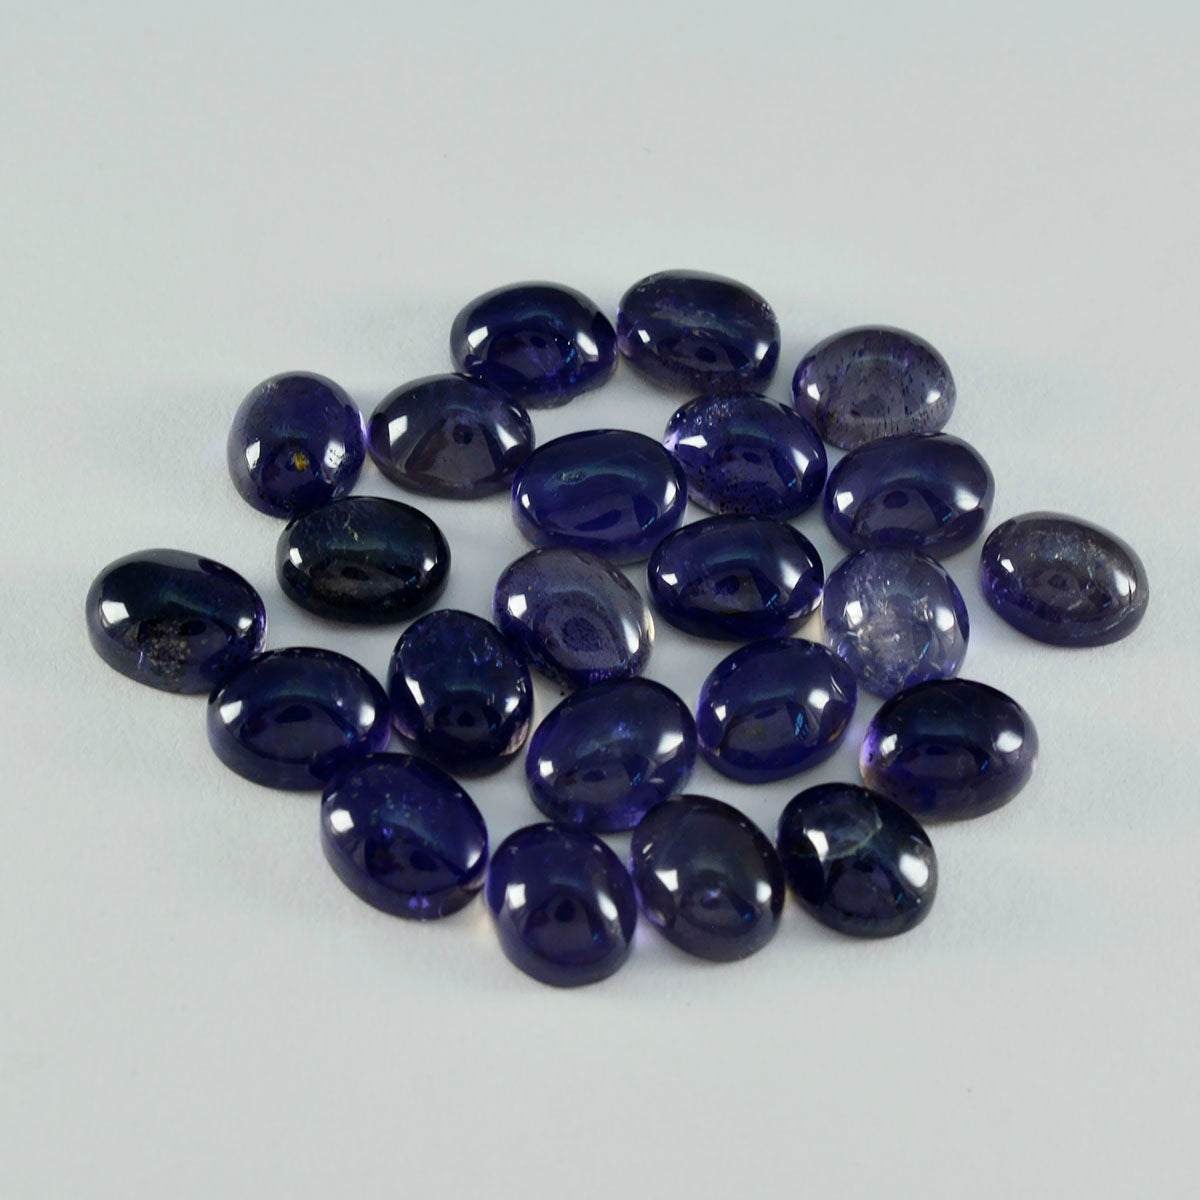 Riyogems 1 Stück blauer Iolith-Cabochon, 9 x 11 mm, ovale Form, schöne, hochwertige lose Edelsteine